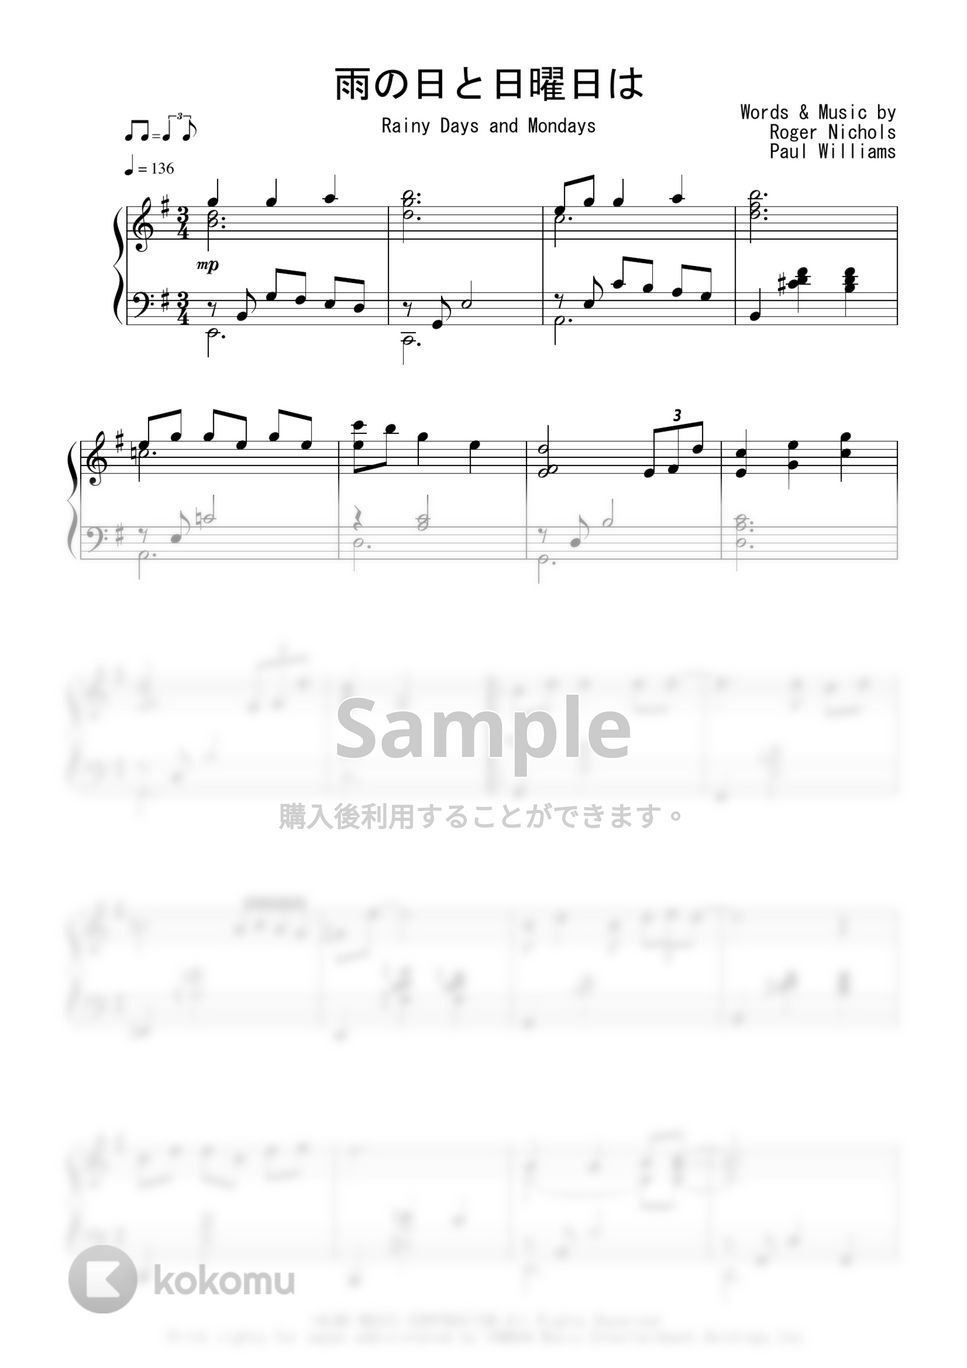 カーペンターズ - 雨の日と月曜日は (Jazz Waltz Ver.) by Peony